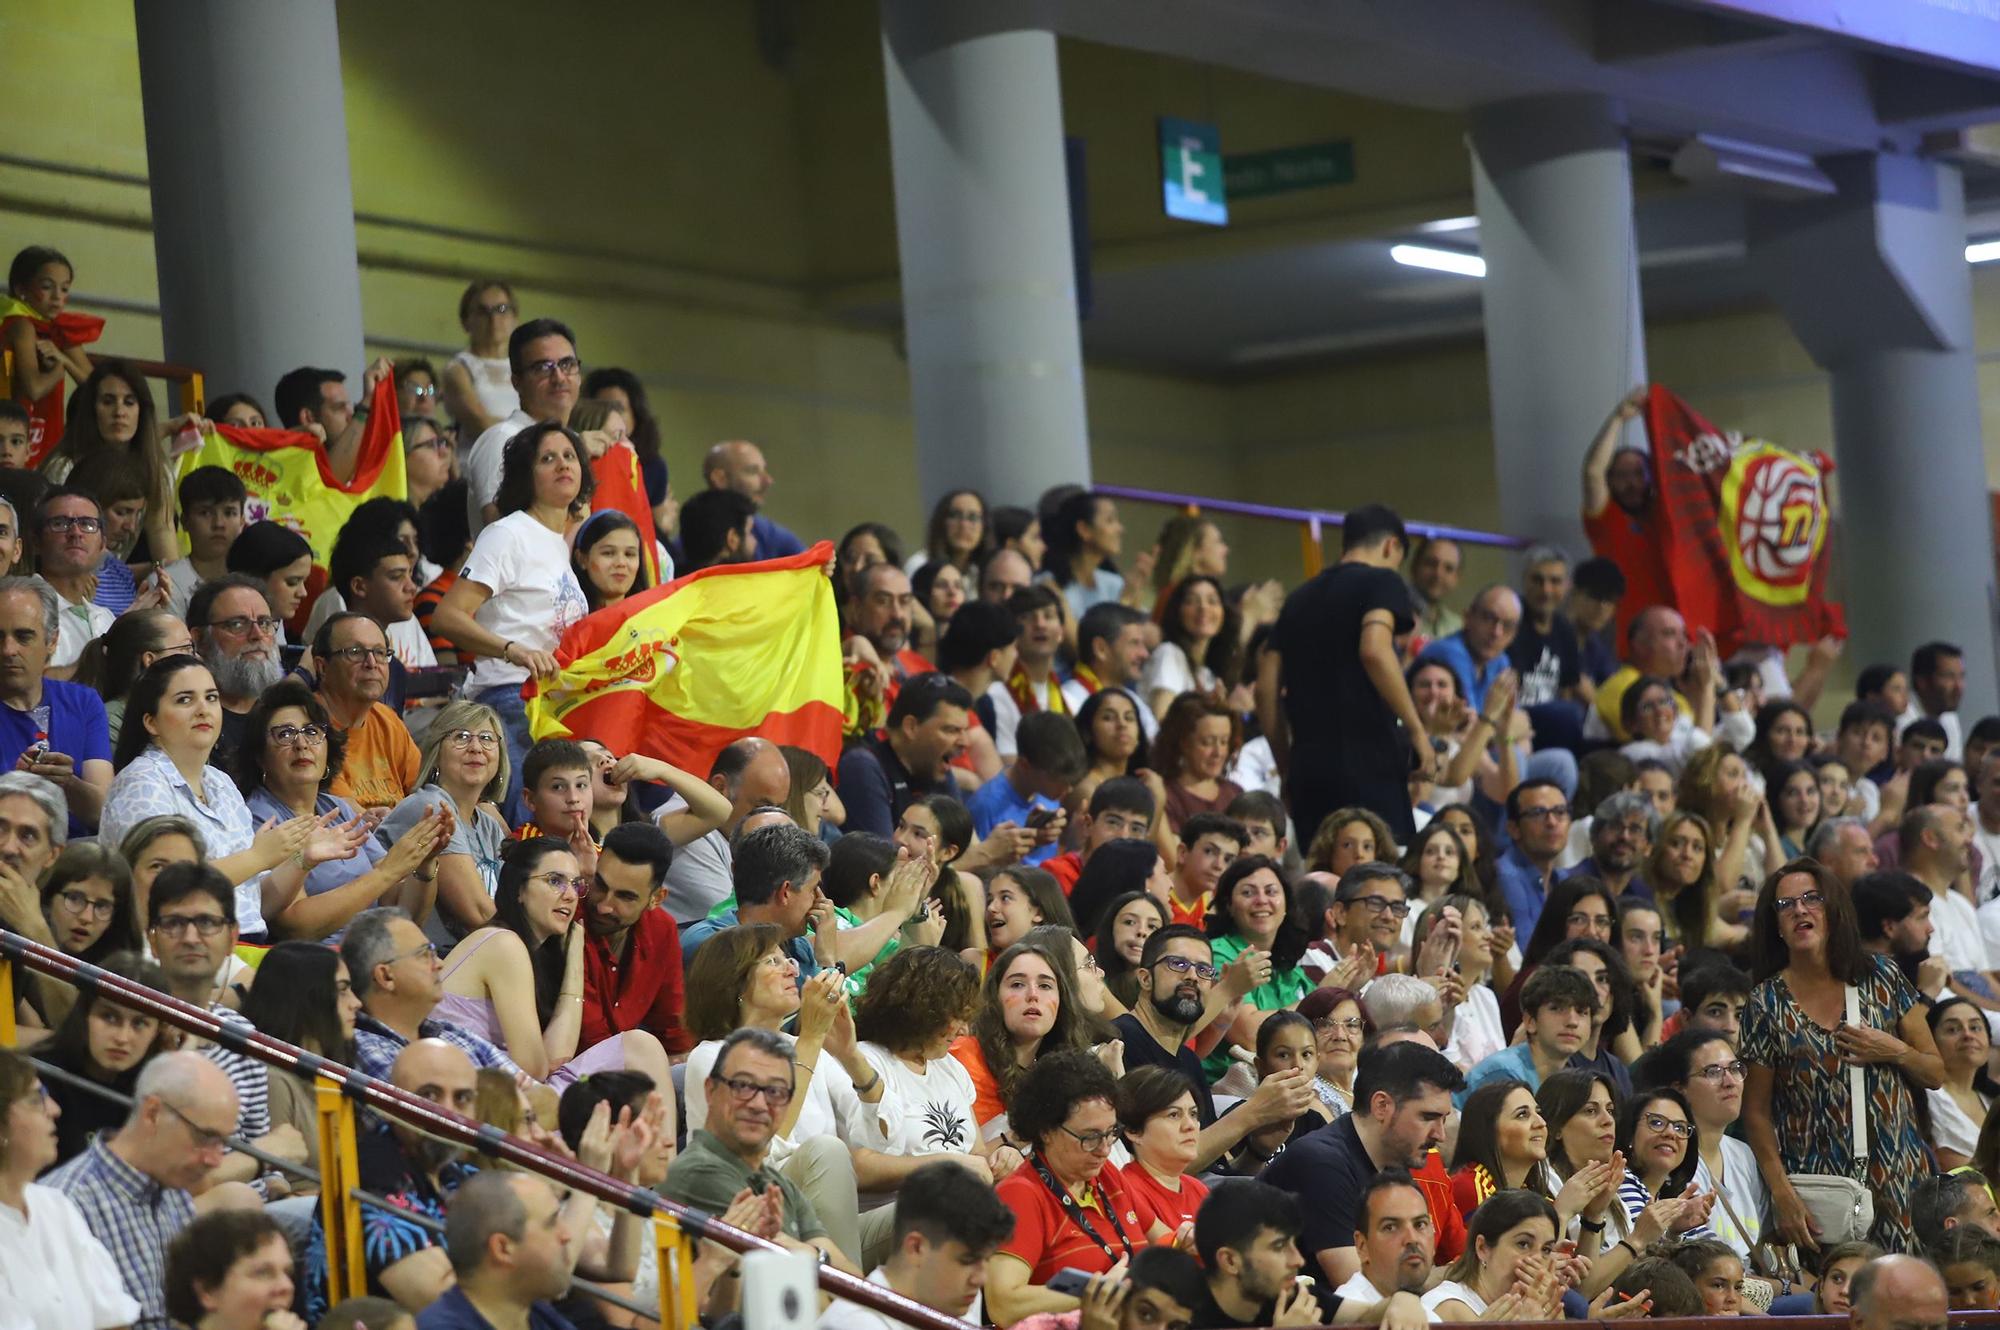 La selección española femenina de baloncesto ante Bélgica, en imágenes